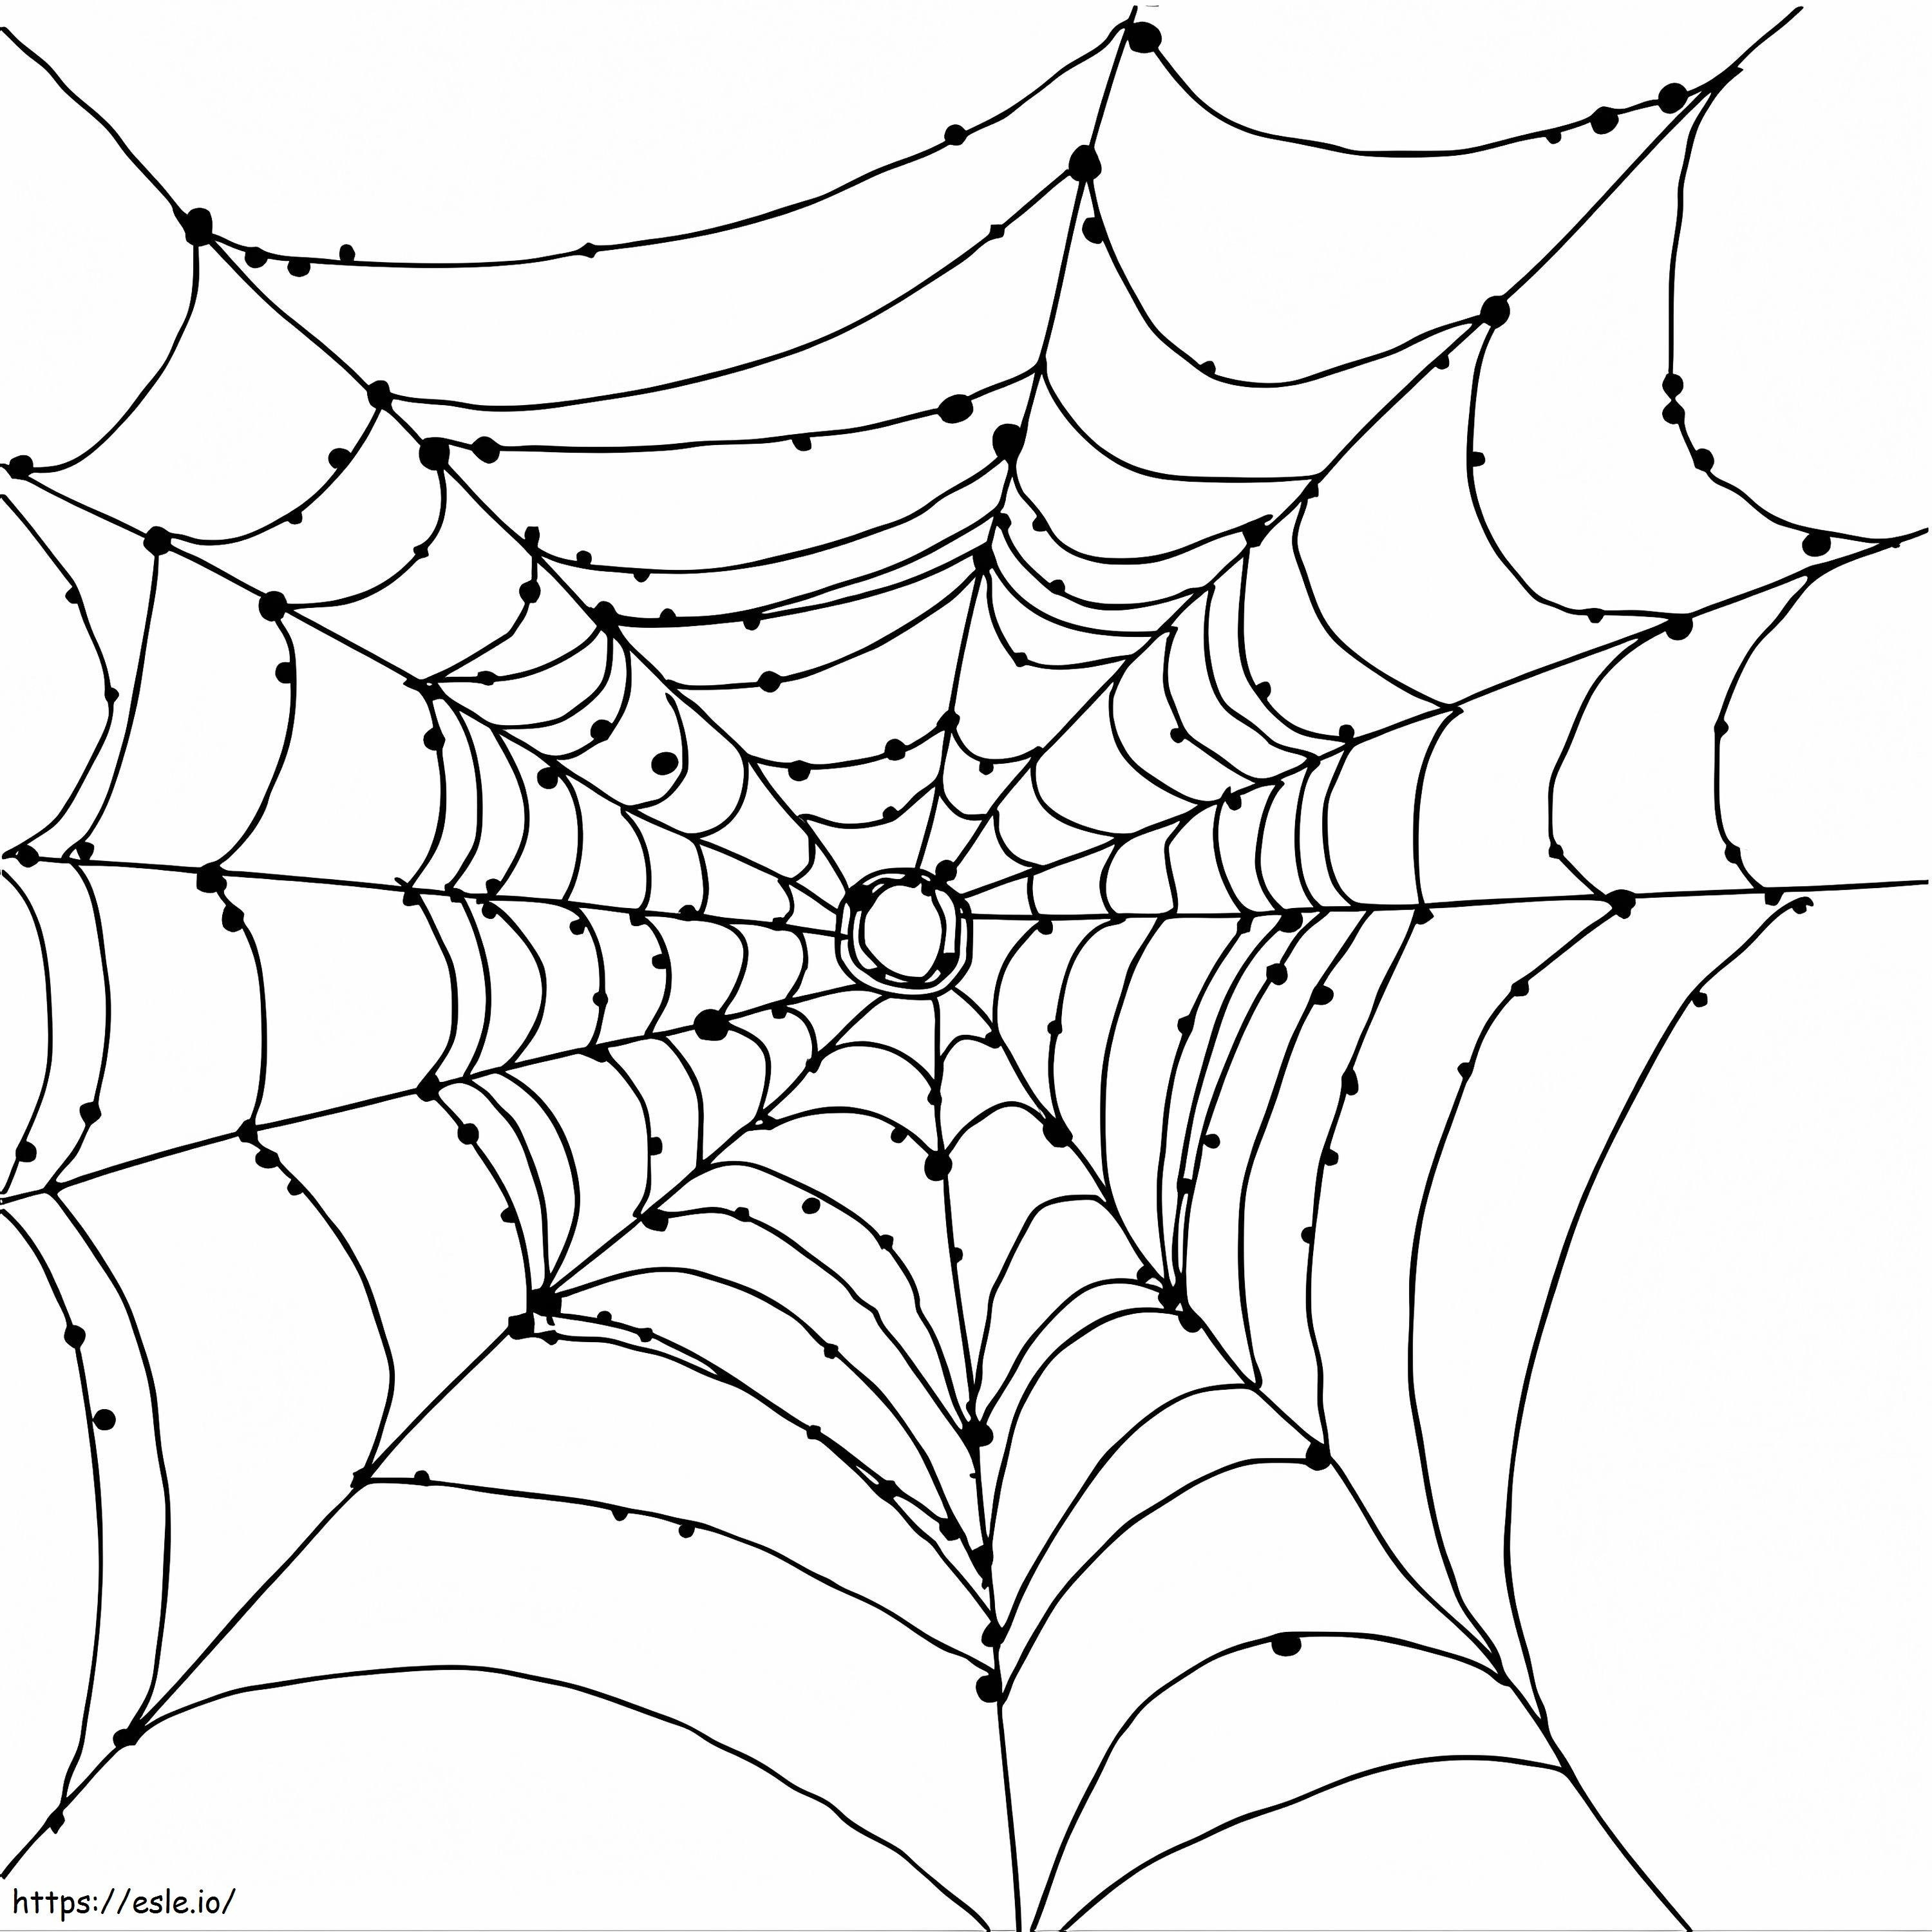 Coloriage Toile d'araignée gratuite à imprimer dessin